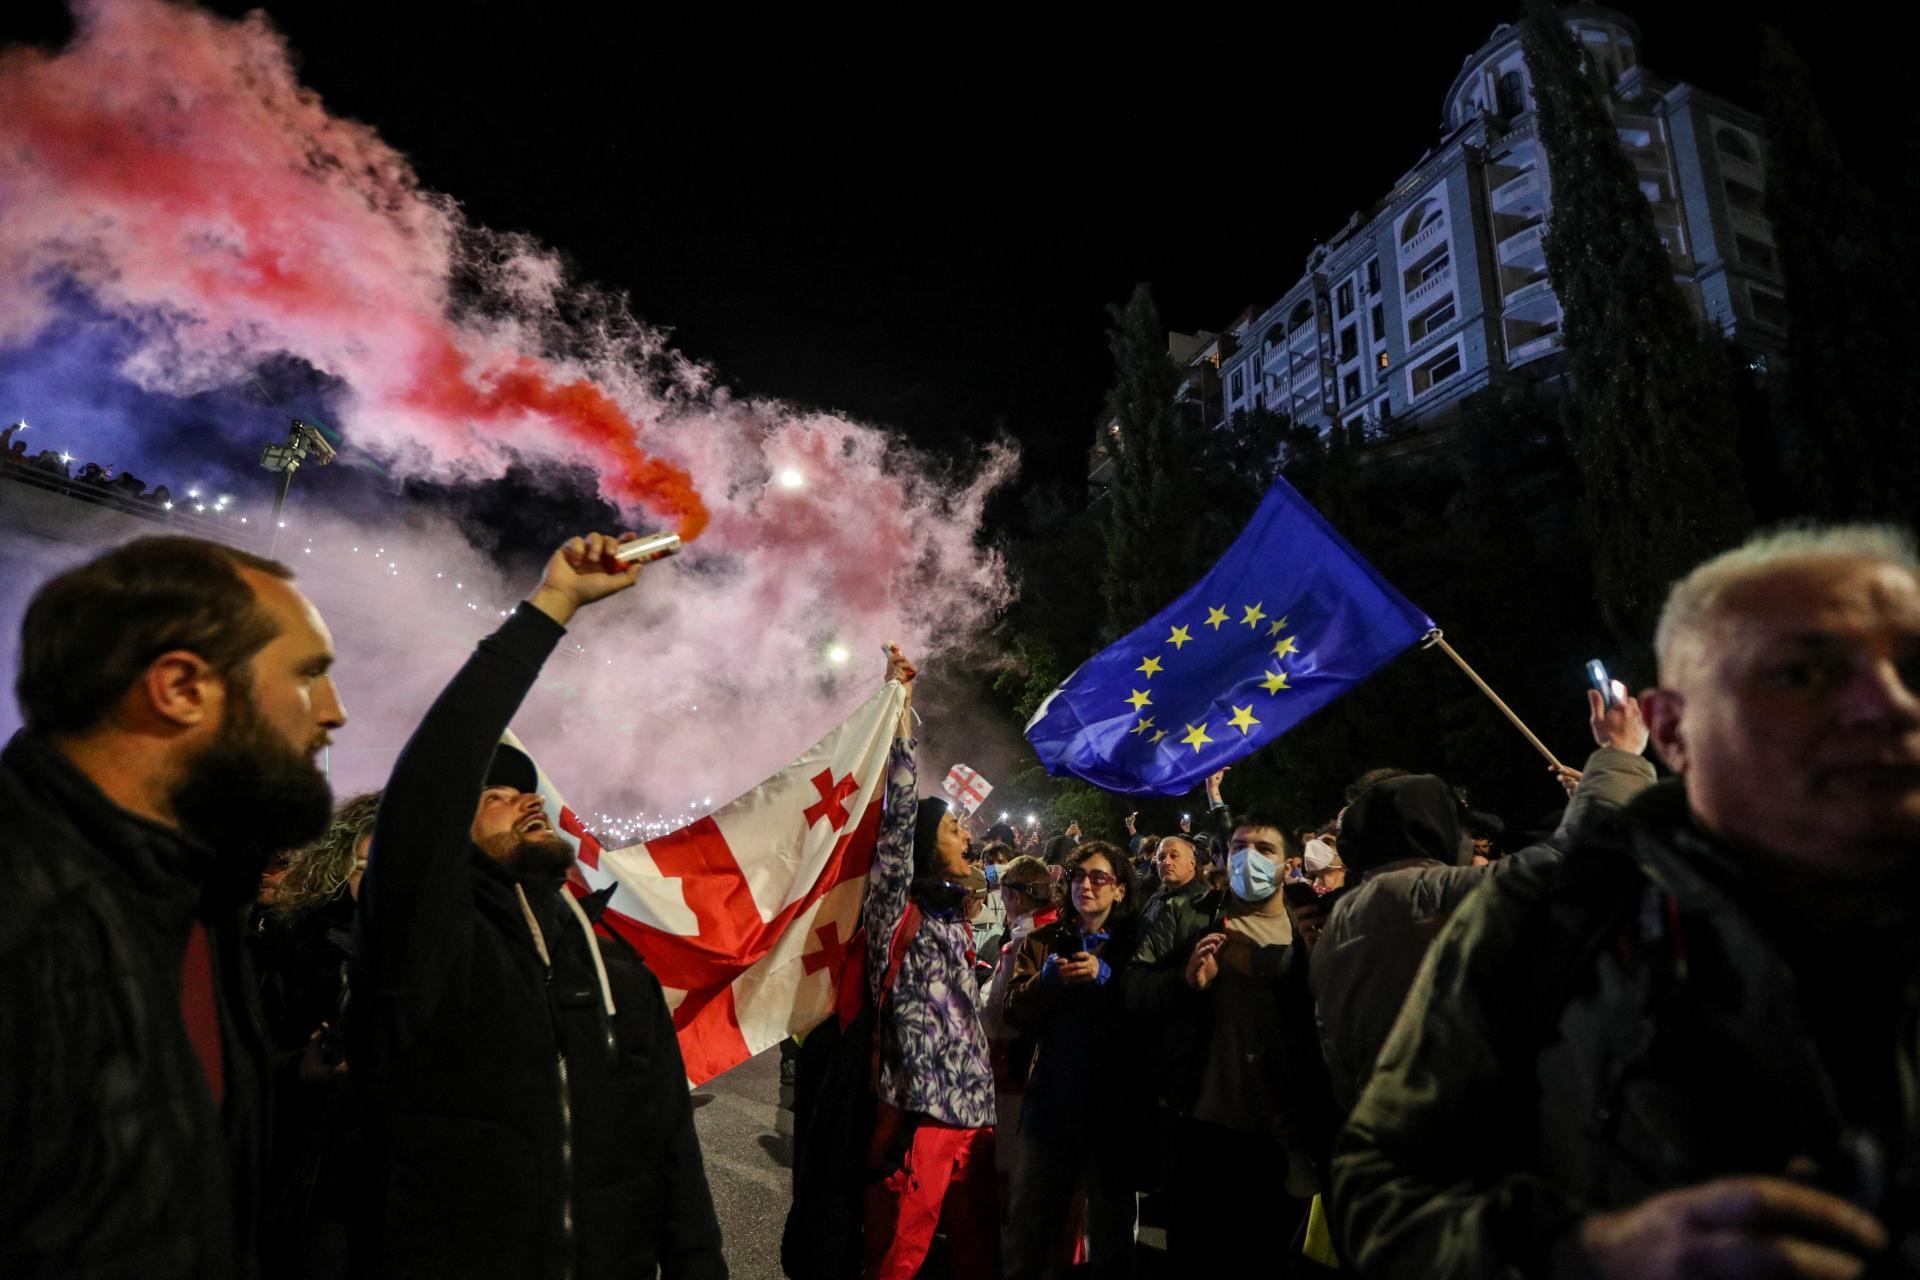 “Veľké sklamanie.” Rada Európy odsúdila gruzínsky návrh zákona o zahraničnom vplyve